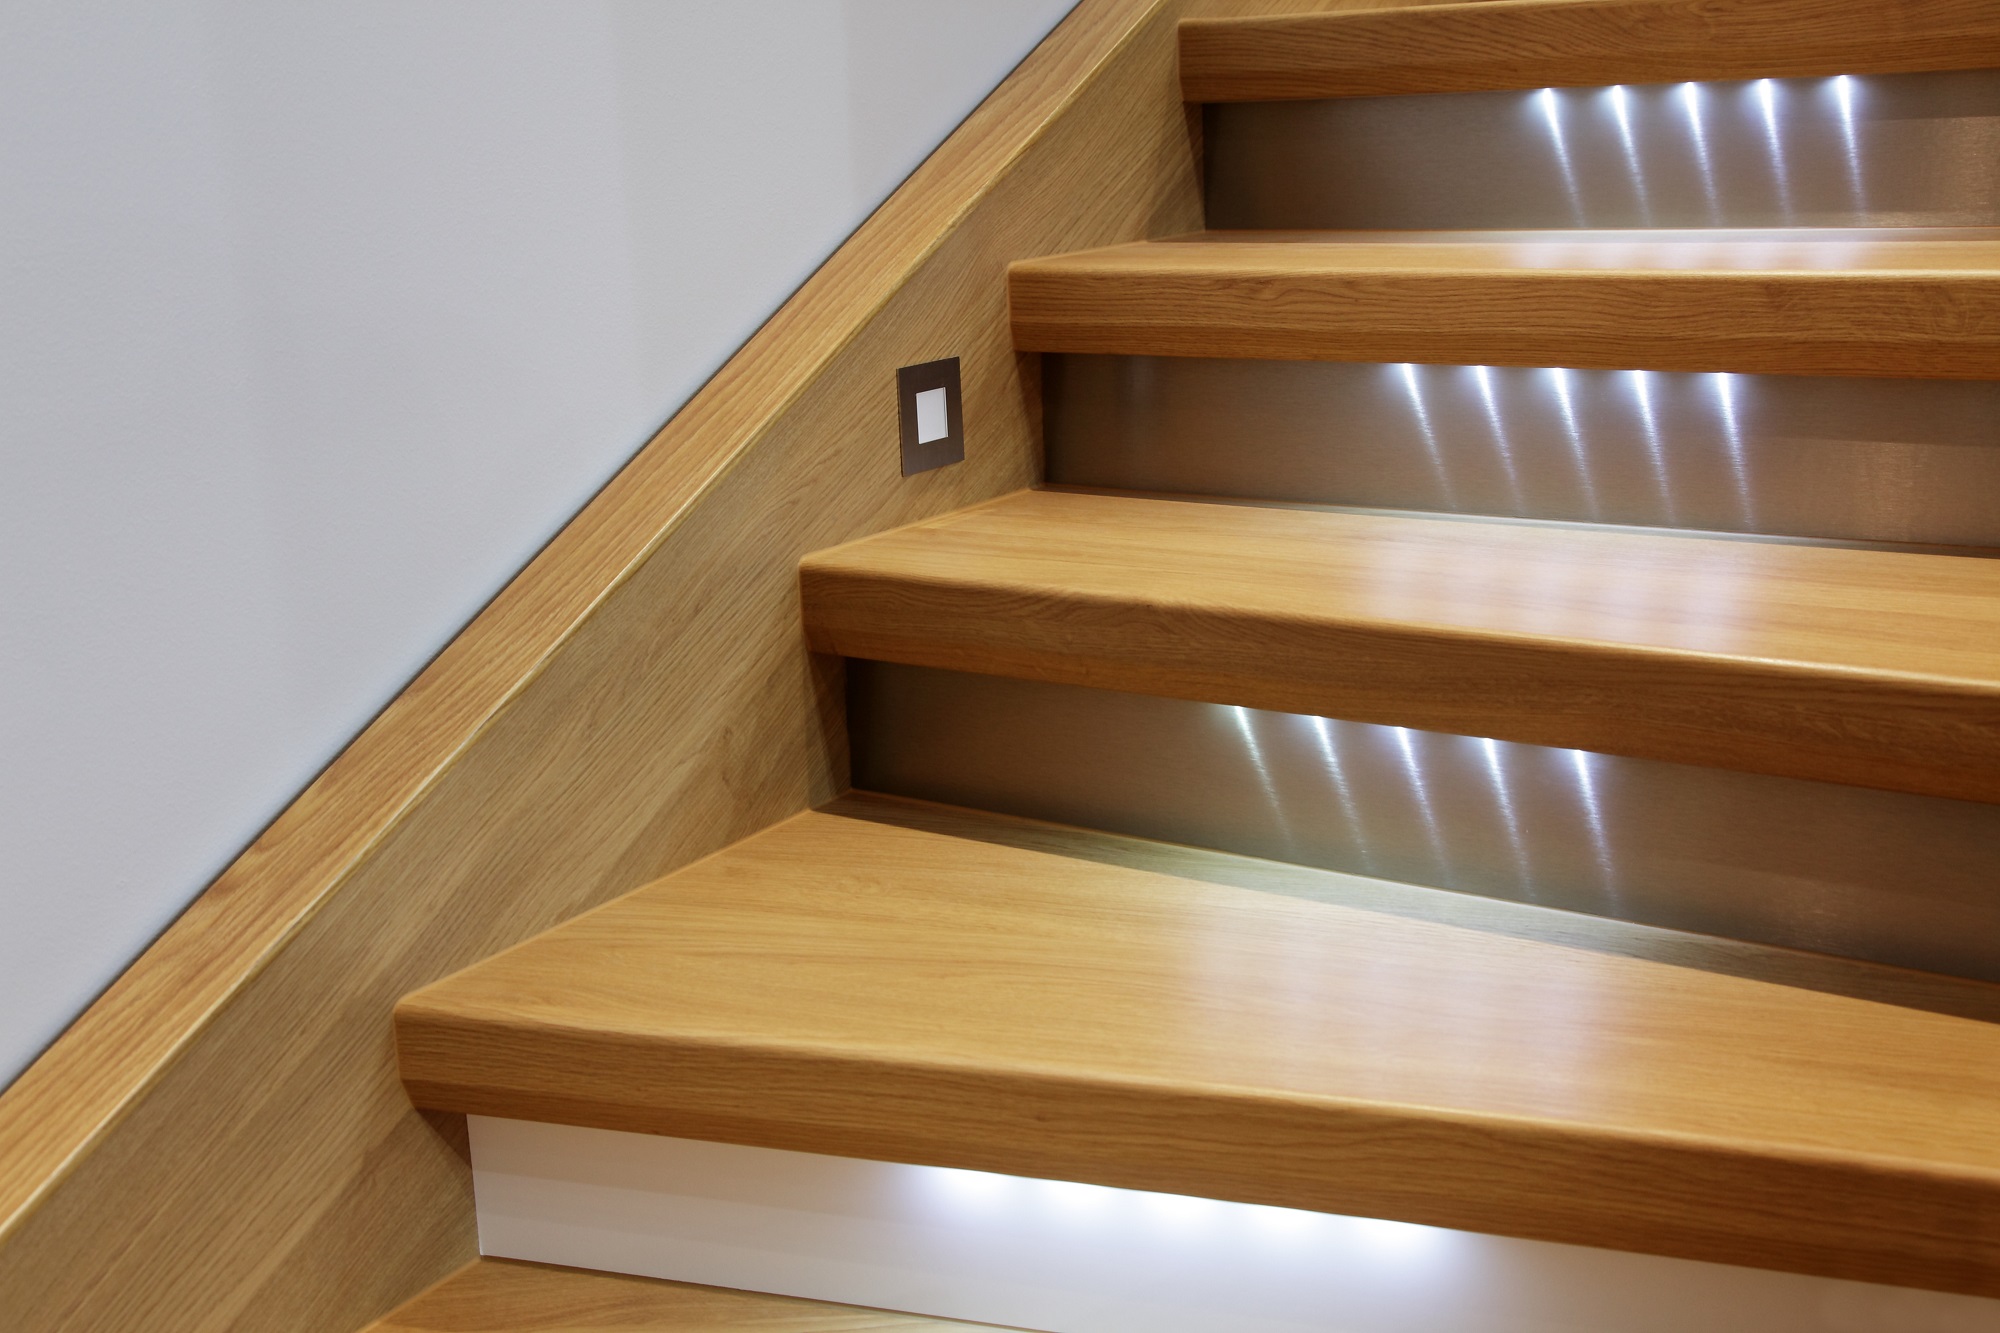 Светильники для лестницы 74 фото варианты подсветки ступеней в частном доме светодиодное освещение с датчиками движения